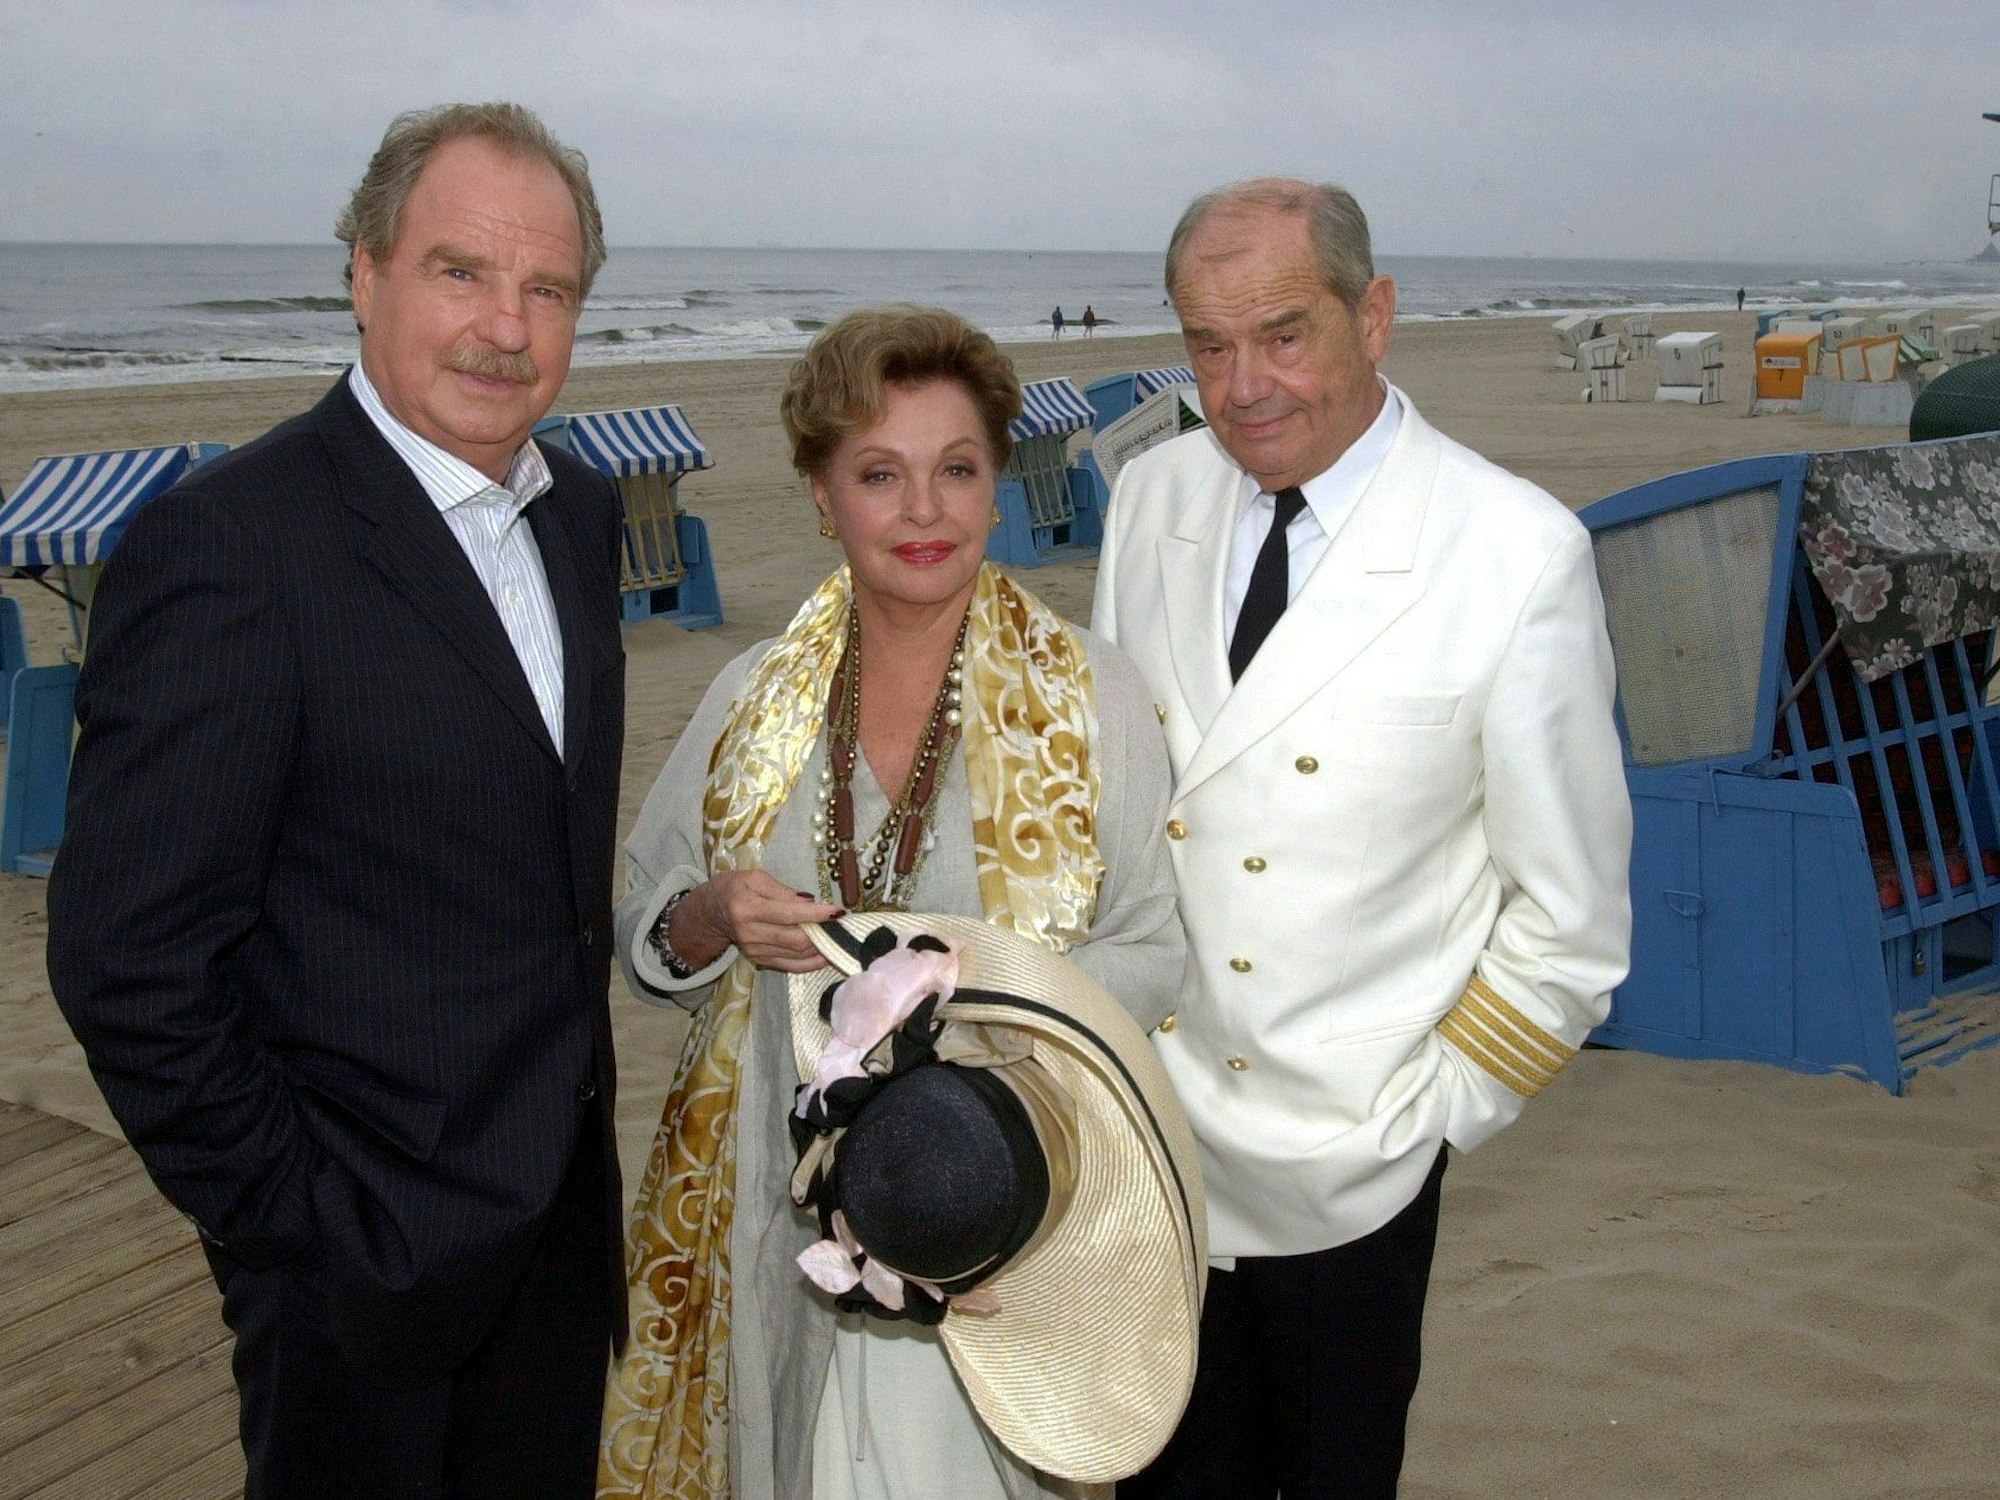 Nadja Tiller und Walter Giller sowie Friedrich von Thun am Strand.